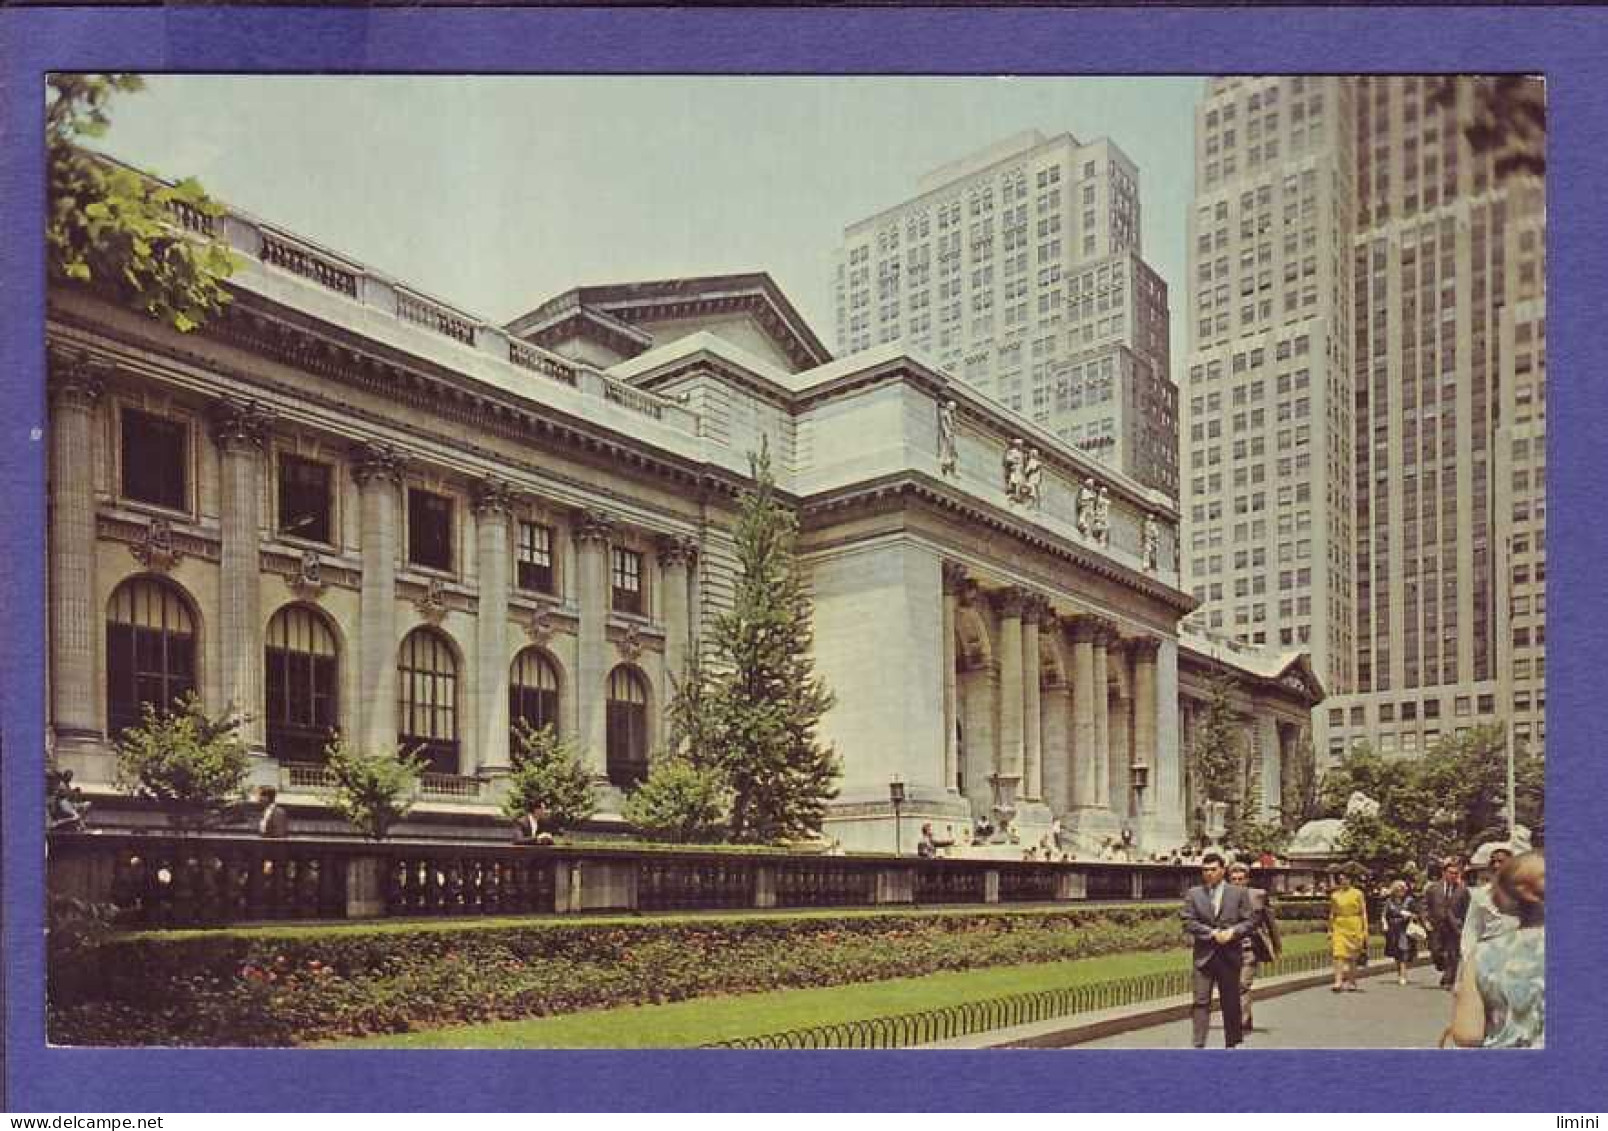 ÉTATS UNIS -  NEW YORK - PUBLIC  LIBRARY -  - Altri Monumenti, Edifici